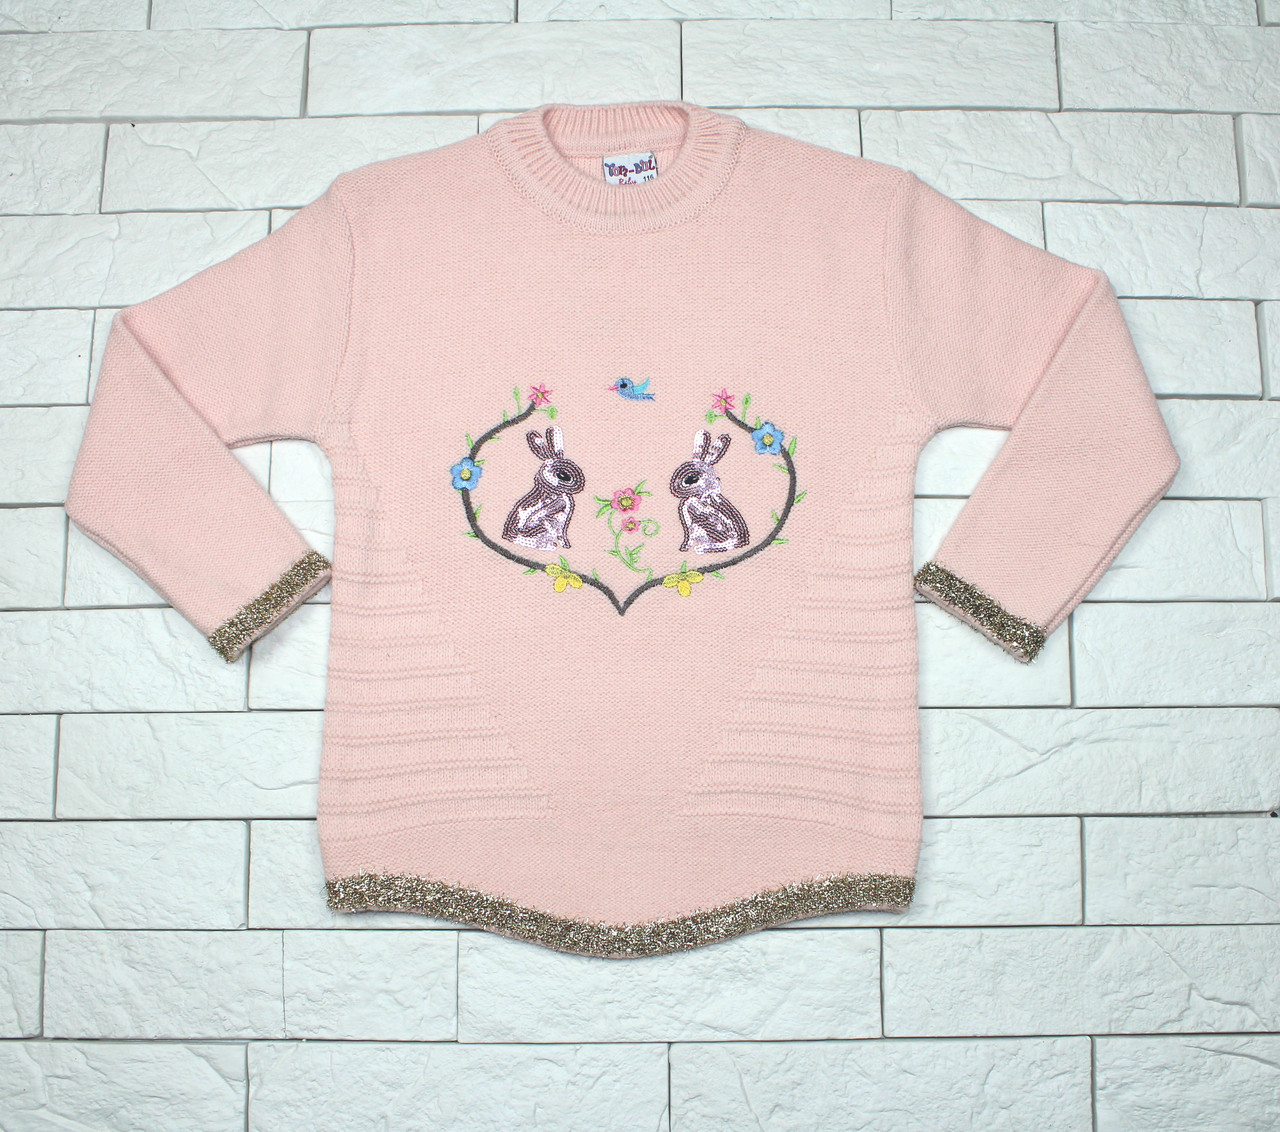 Теплый зимний свитер розовым цветом с зайчиками для девочки